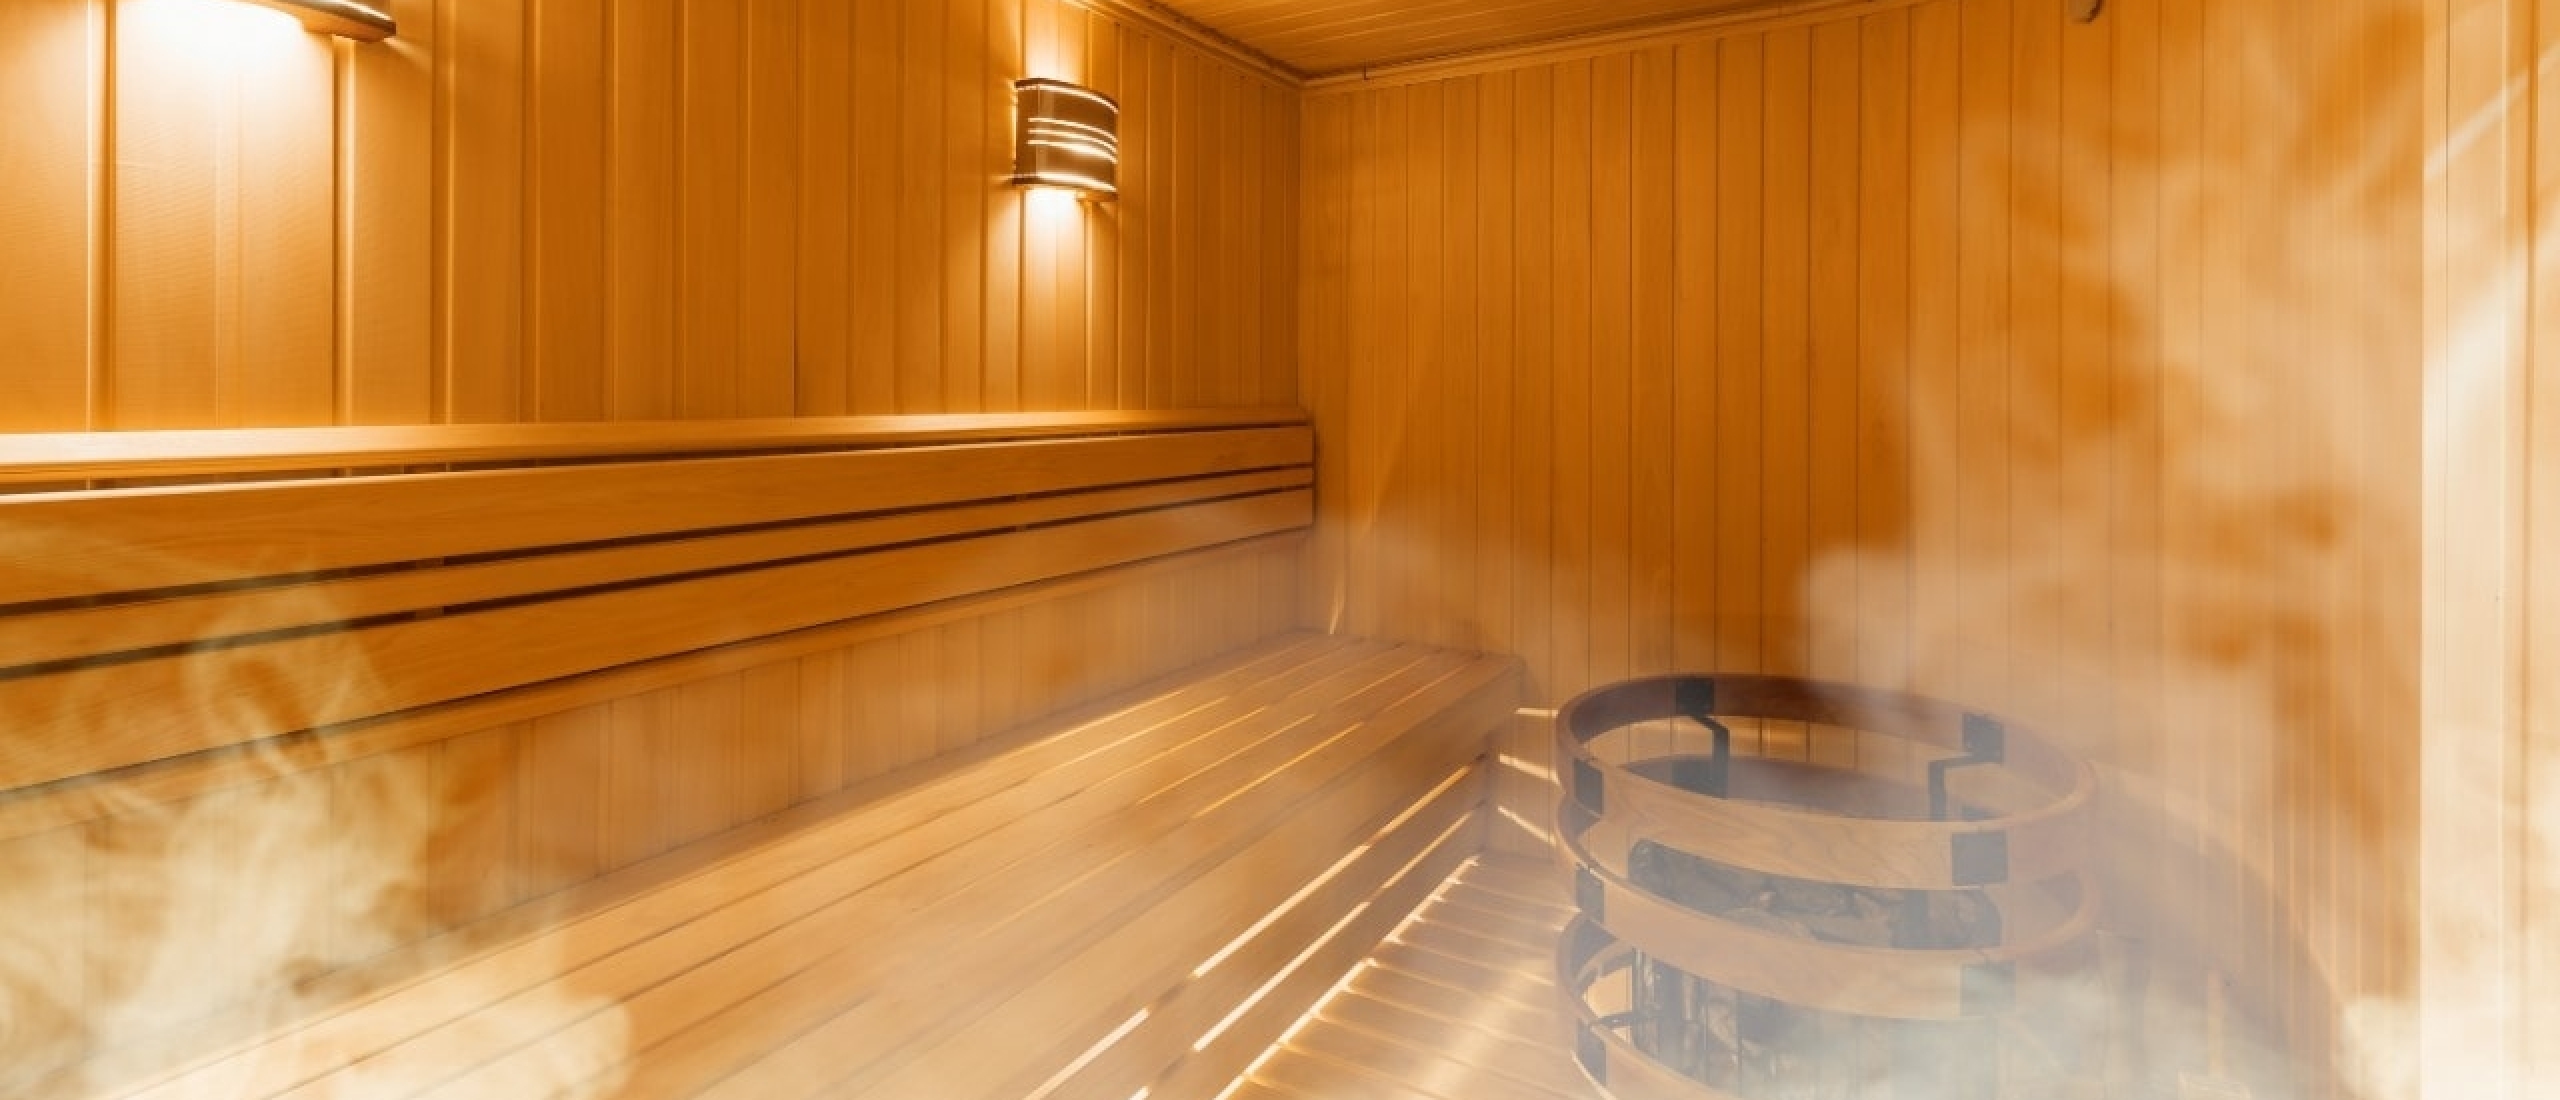 Waarom is een sauna gezond voor je?